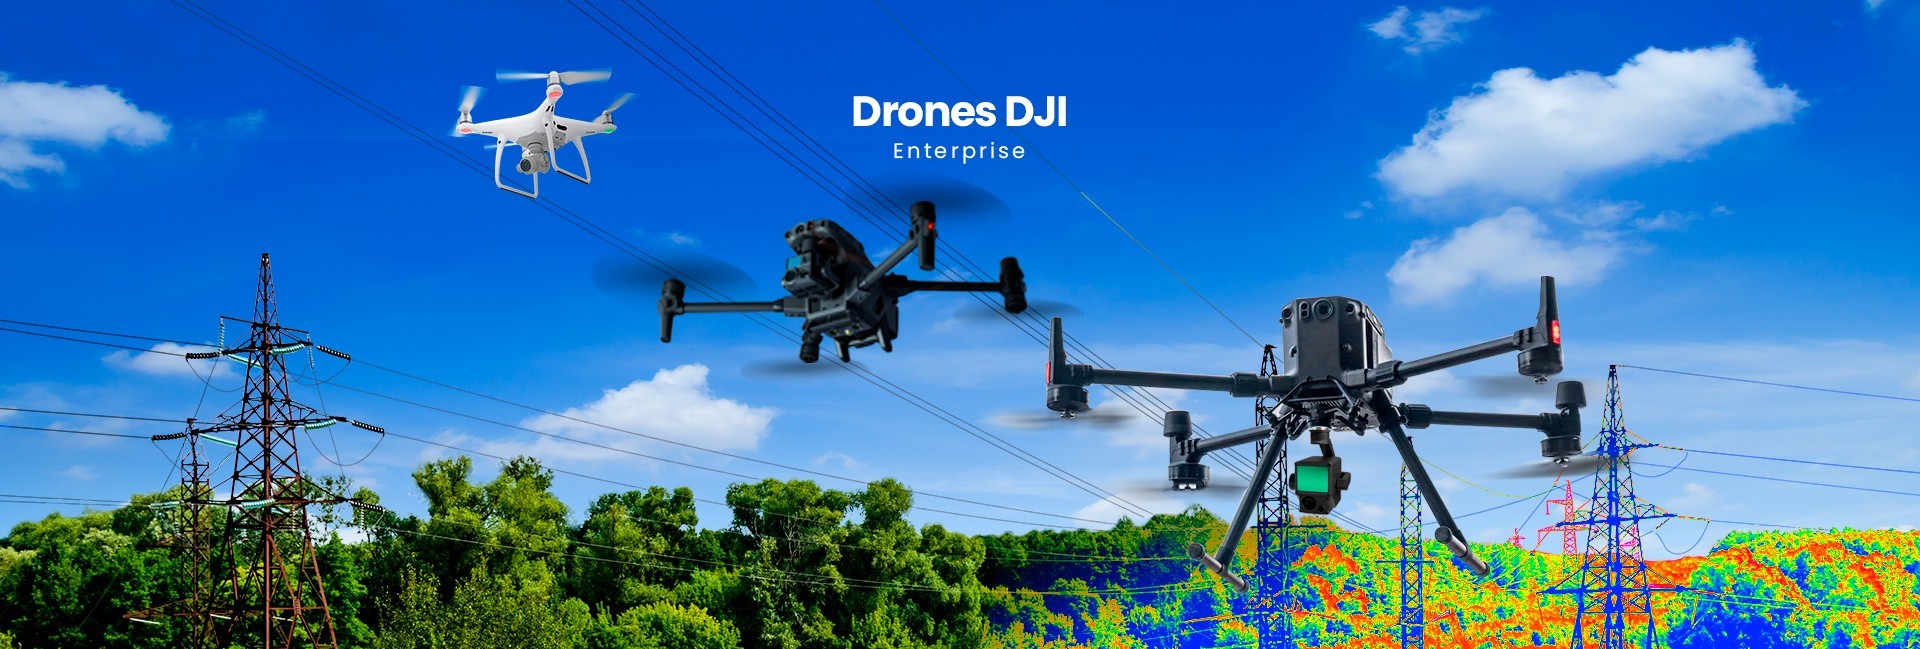 DJI Enterprise Drones